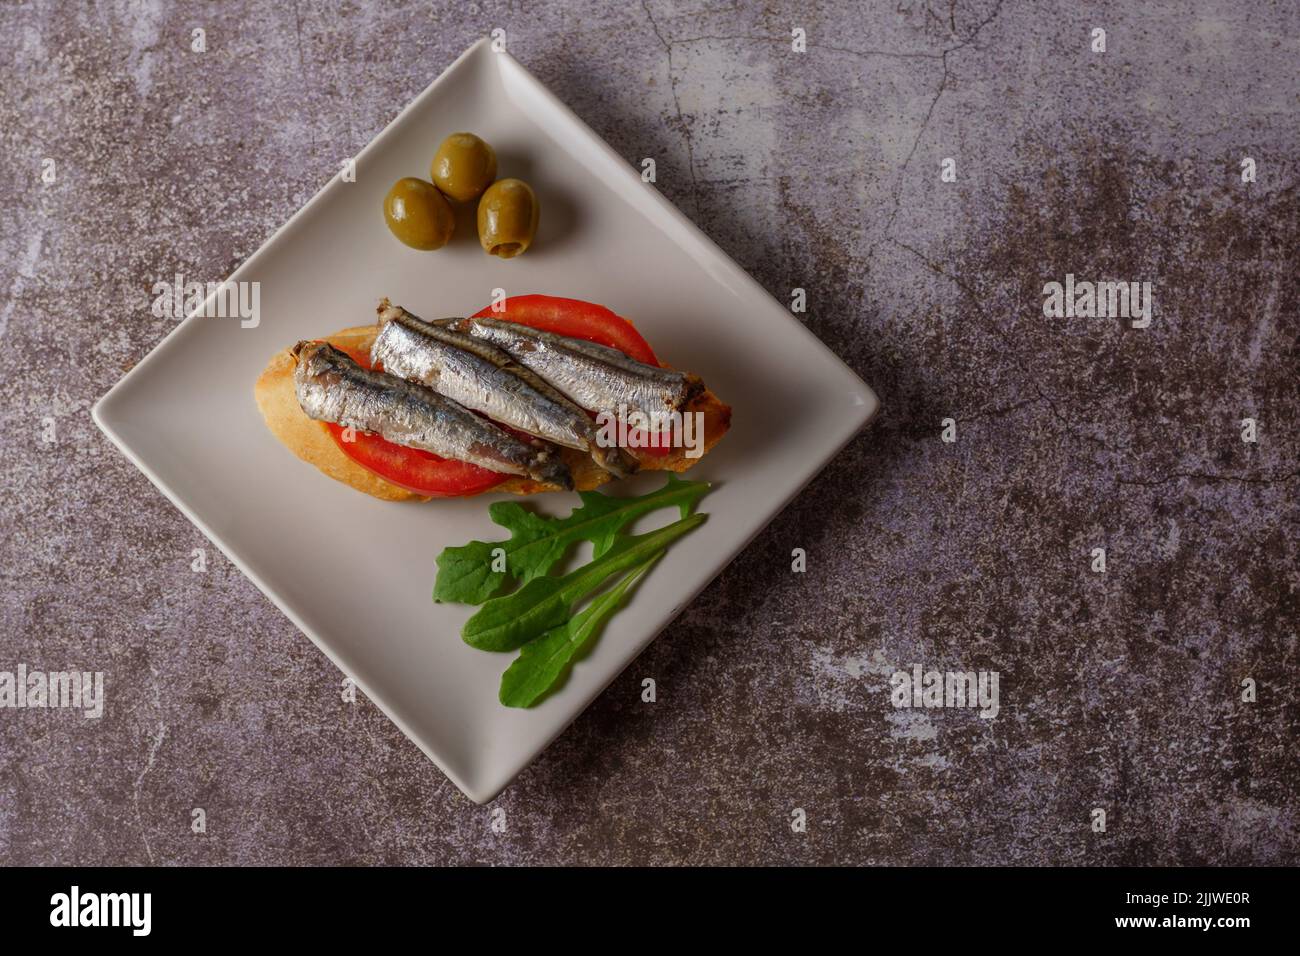 tapa de sardines sur une tranche de pain à la tomate et aux olives sur une assiette blanche avec un fond blanc typiquement espagnol Banque D'Images